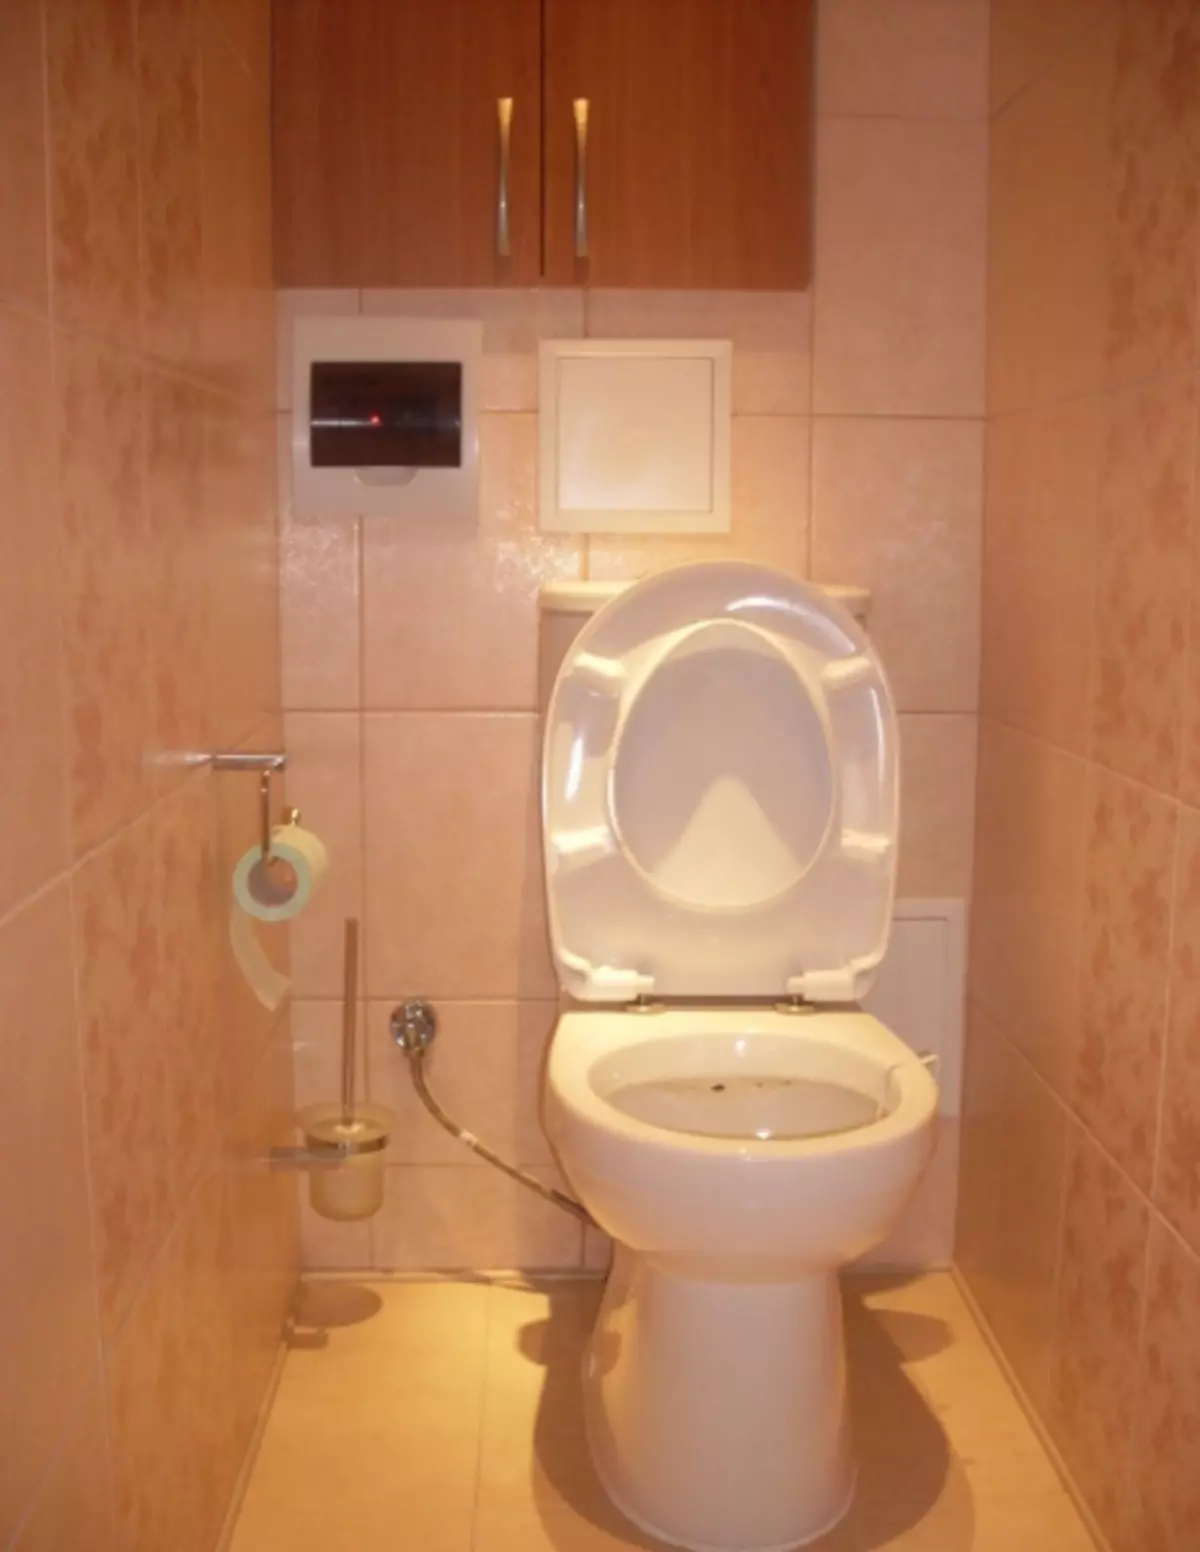 Reparatur an Design vun Toilette an Khruschochev (55 Fotoen)